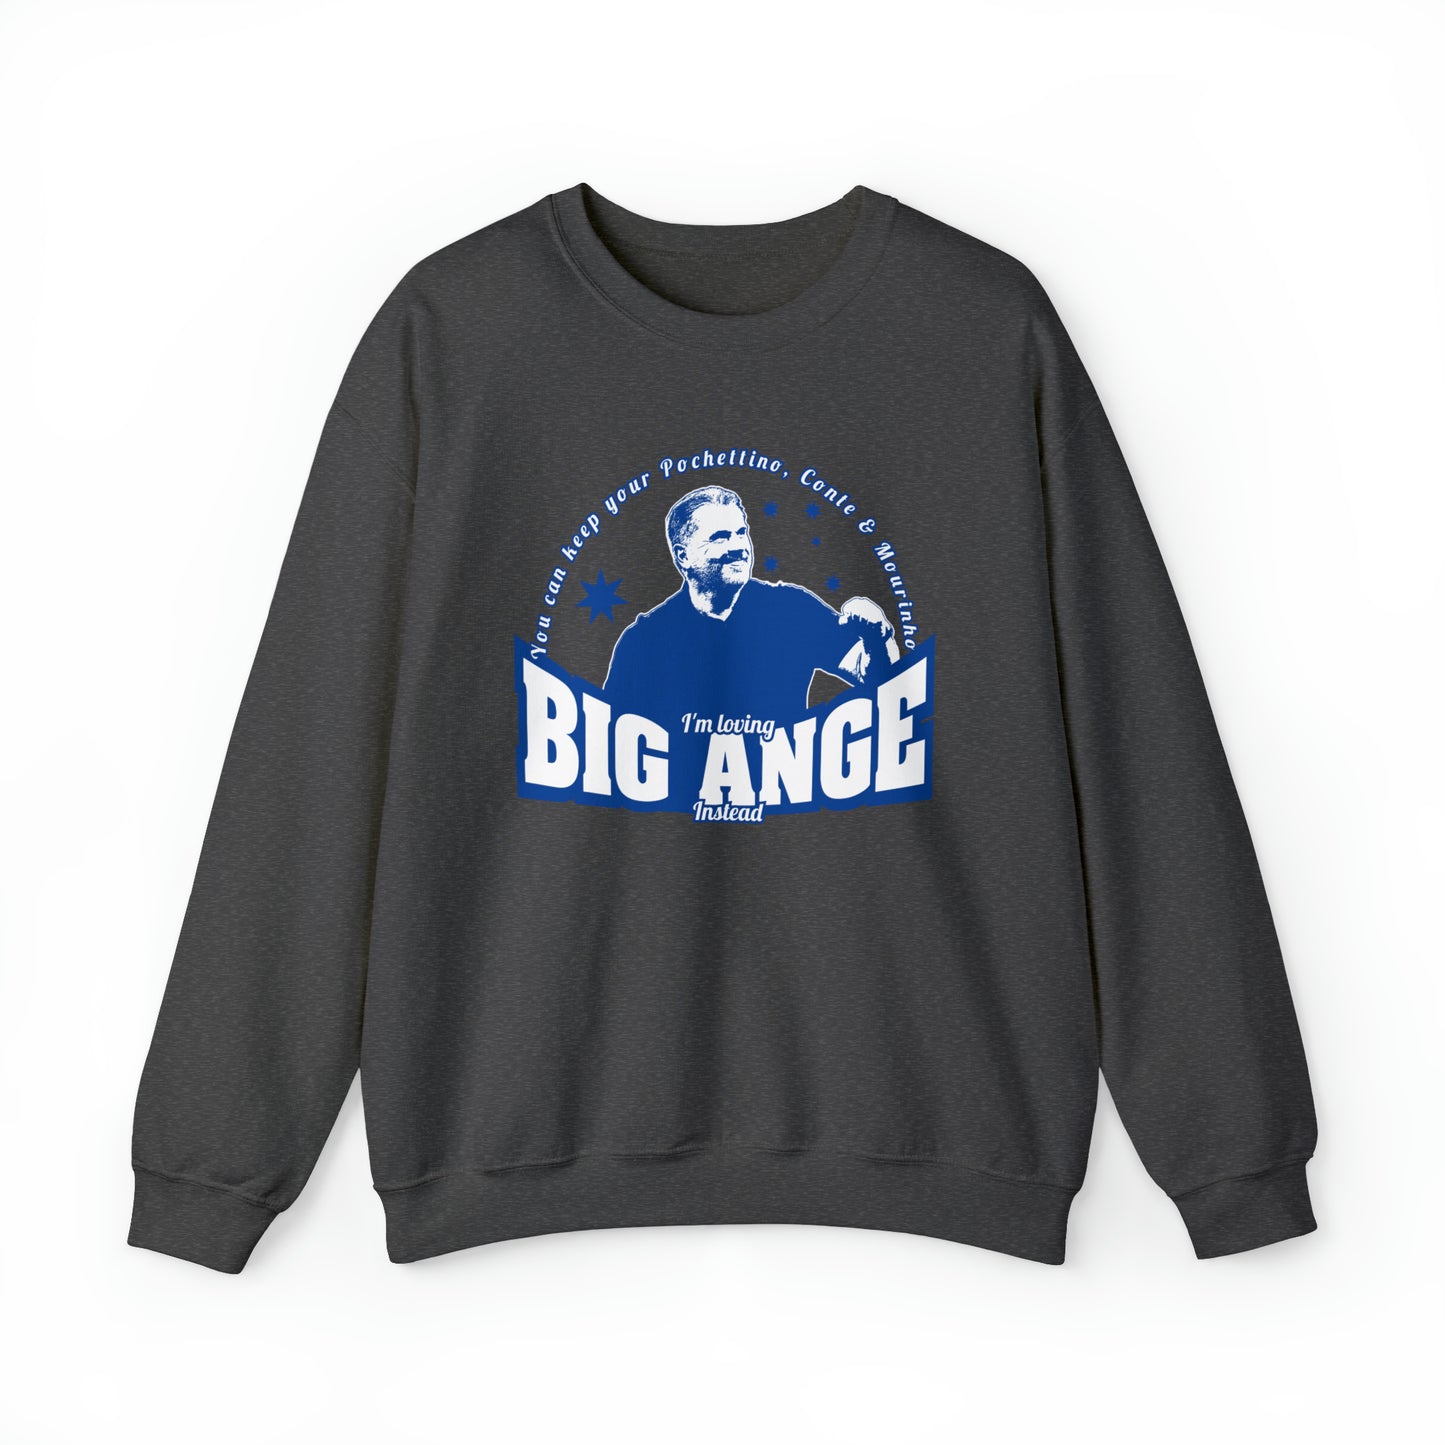 I'm Loving Big Ange Instead Ange Postecoglou Crewneck Sweatshirt